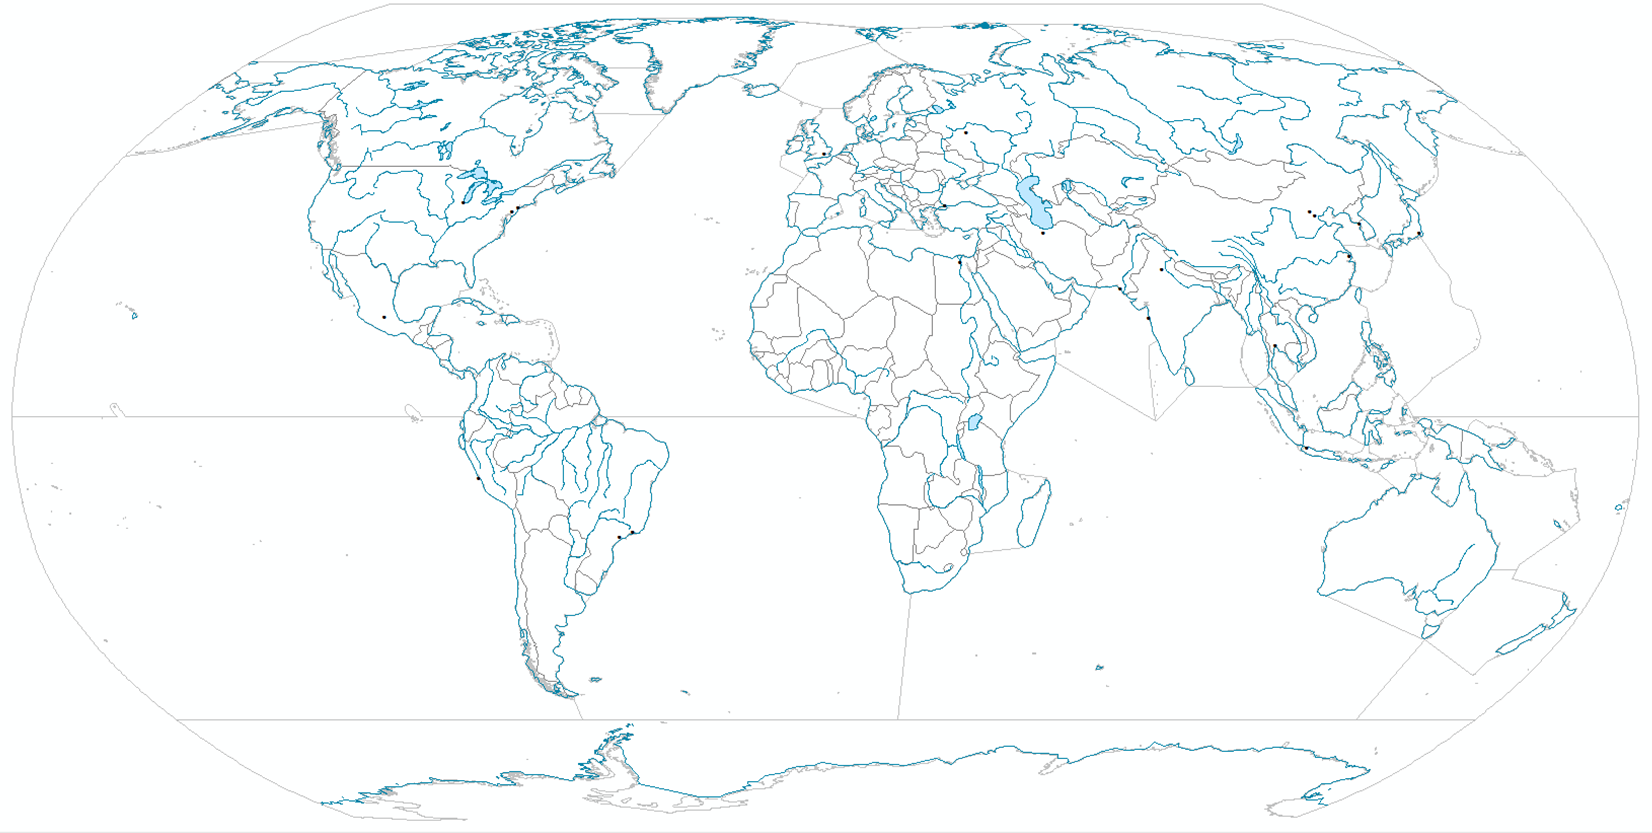 Границы океанов на картографическом изображении